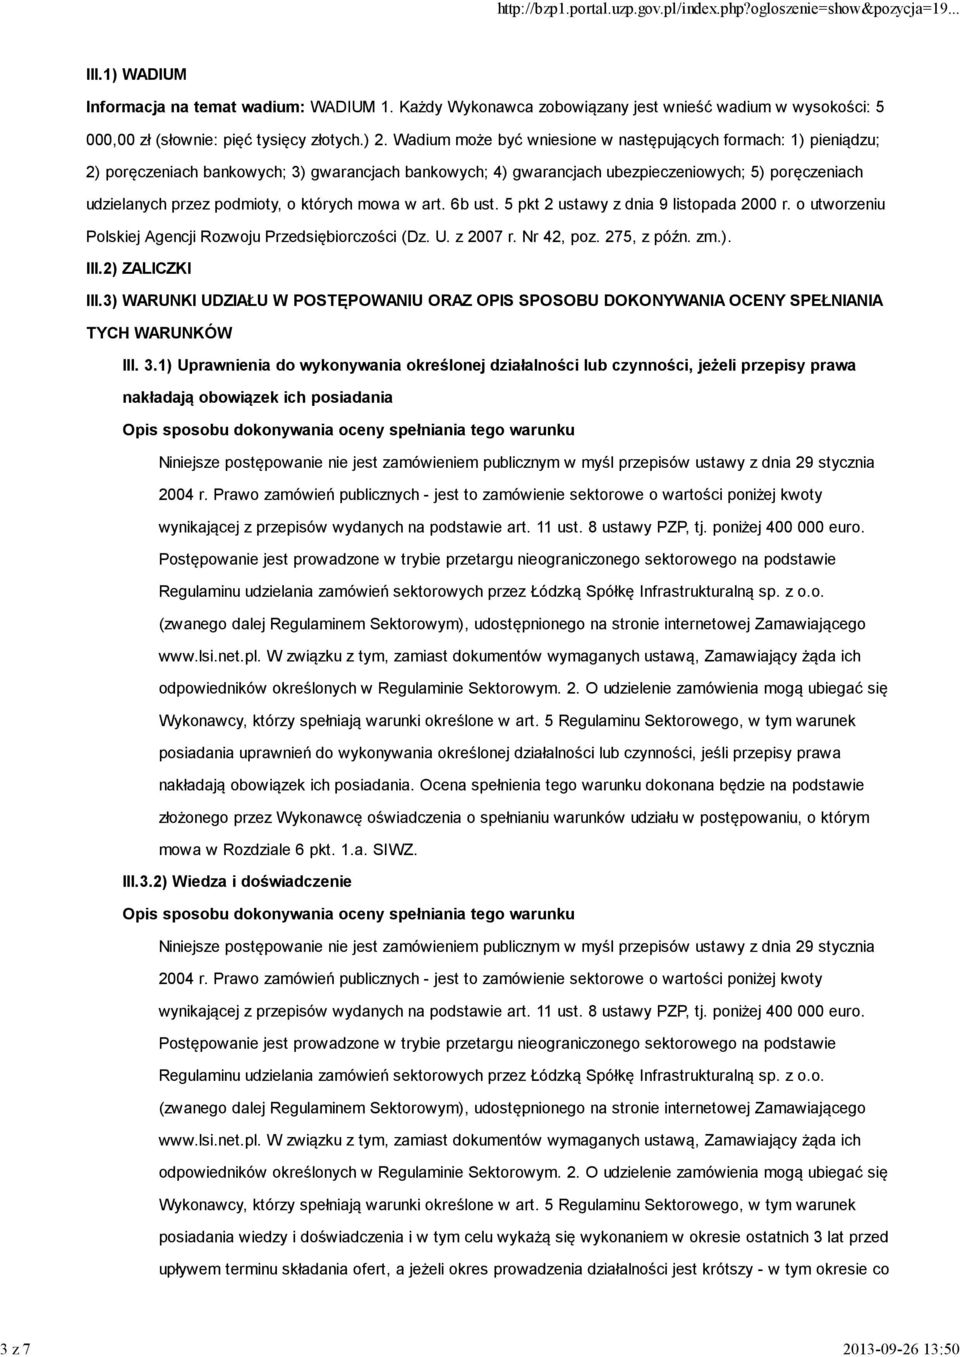 których mowa w art. 6b ust. 5 pkt 2 ustawy z dnia 9 listopada 2000 r. o utworzeniu Polskiej Agencji Rozwoju Przedsiębiorczości (Dz. U. z 2007 r. Nr 42, poz. 275, z późn. zm.). III.2) ZALICZKI III.